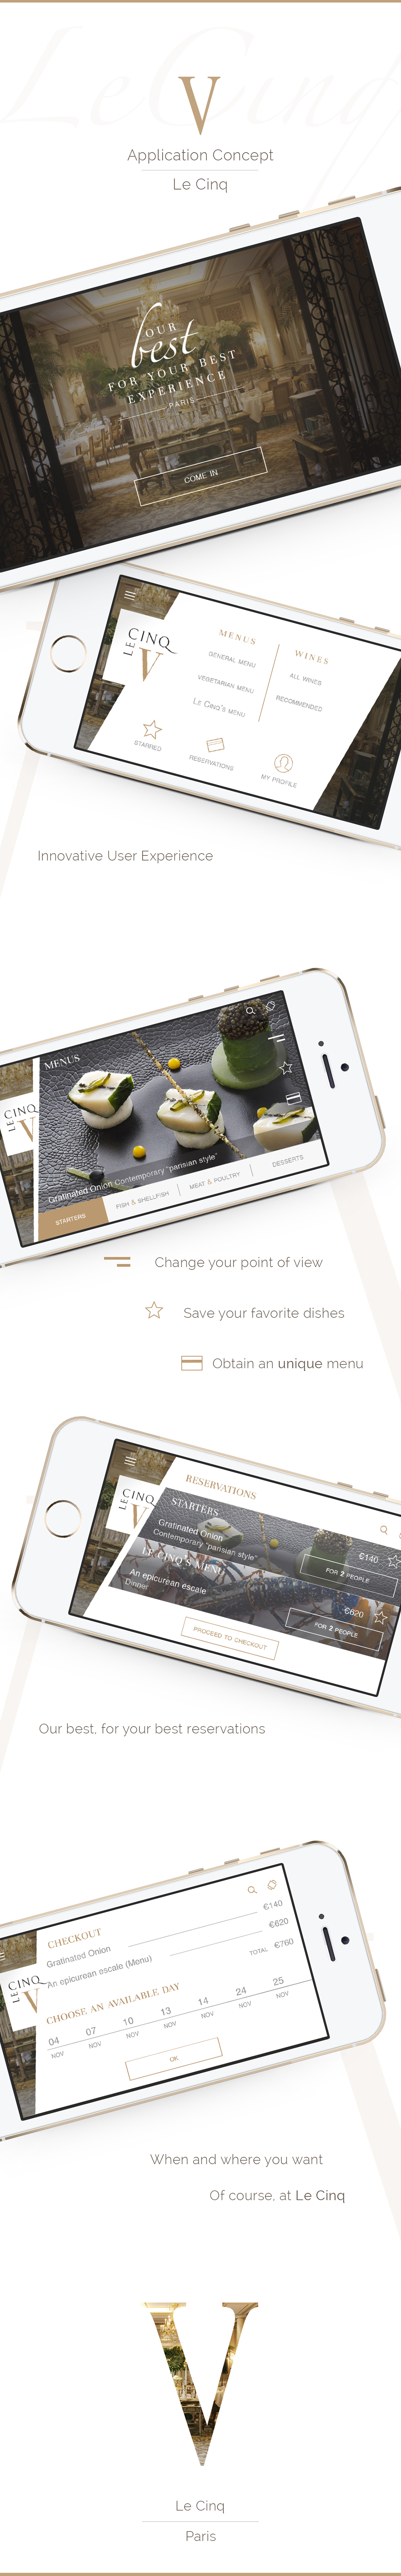 LeCinq luxury restaurant concept app redoddity Muid ios